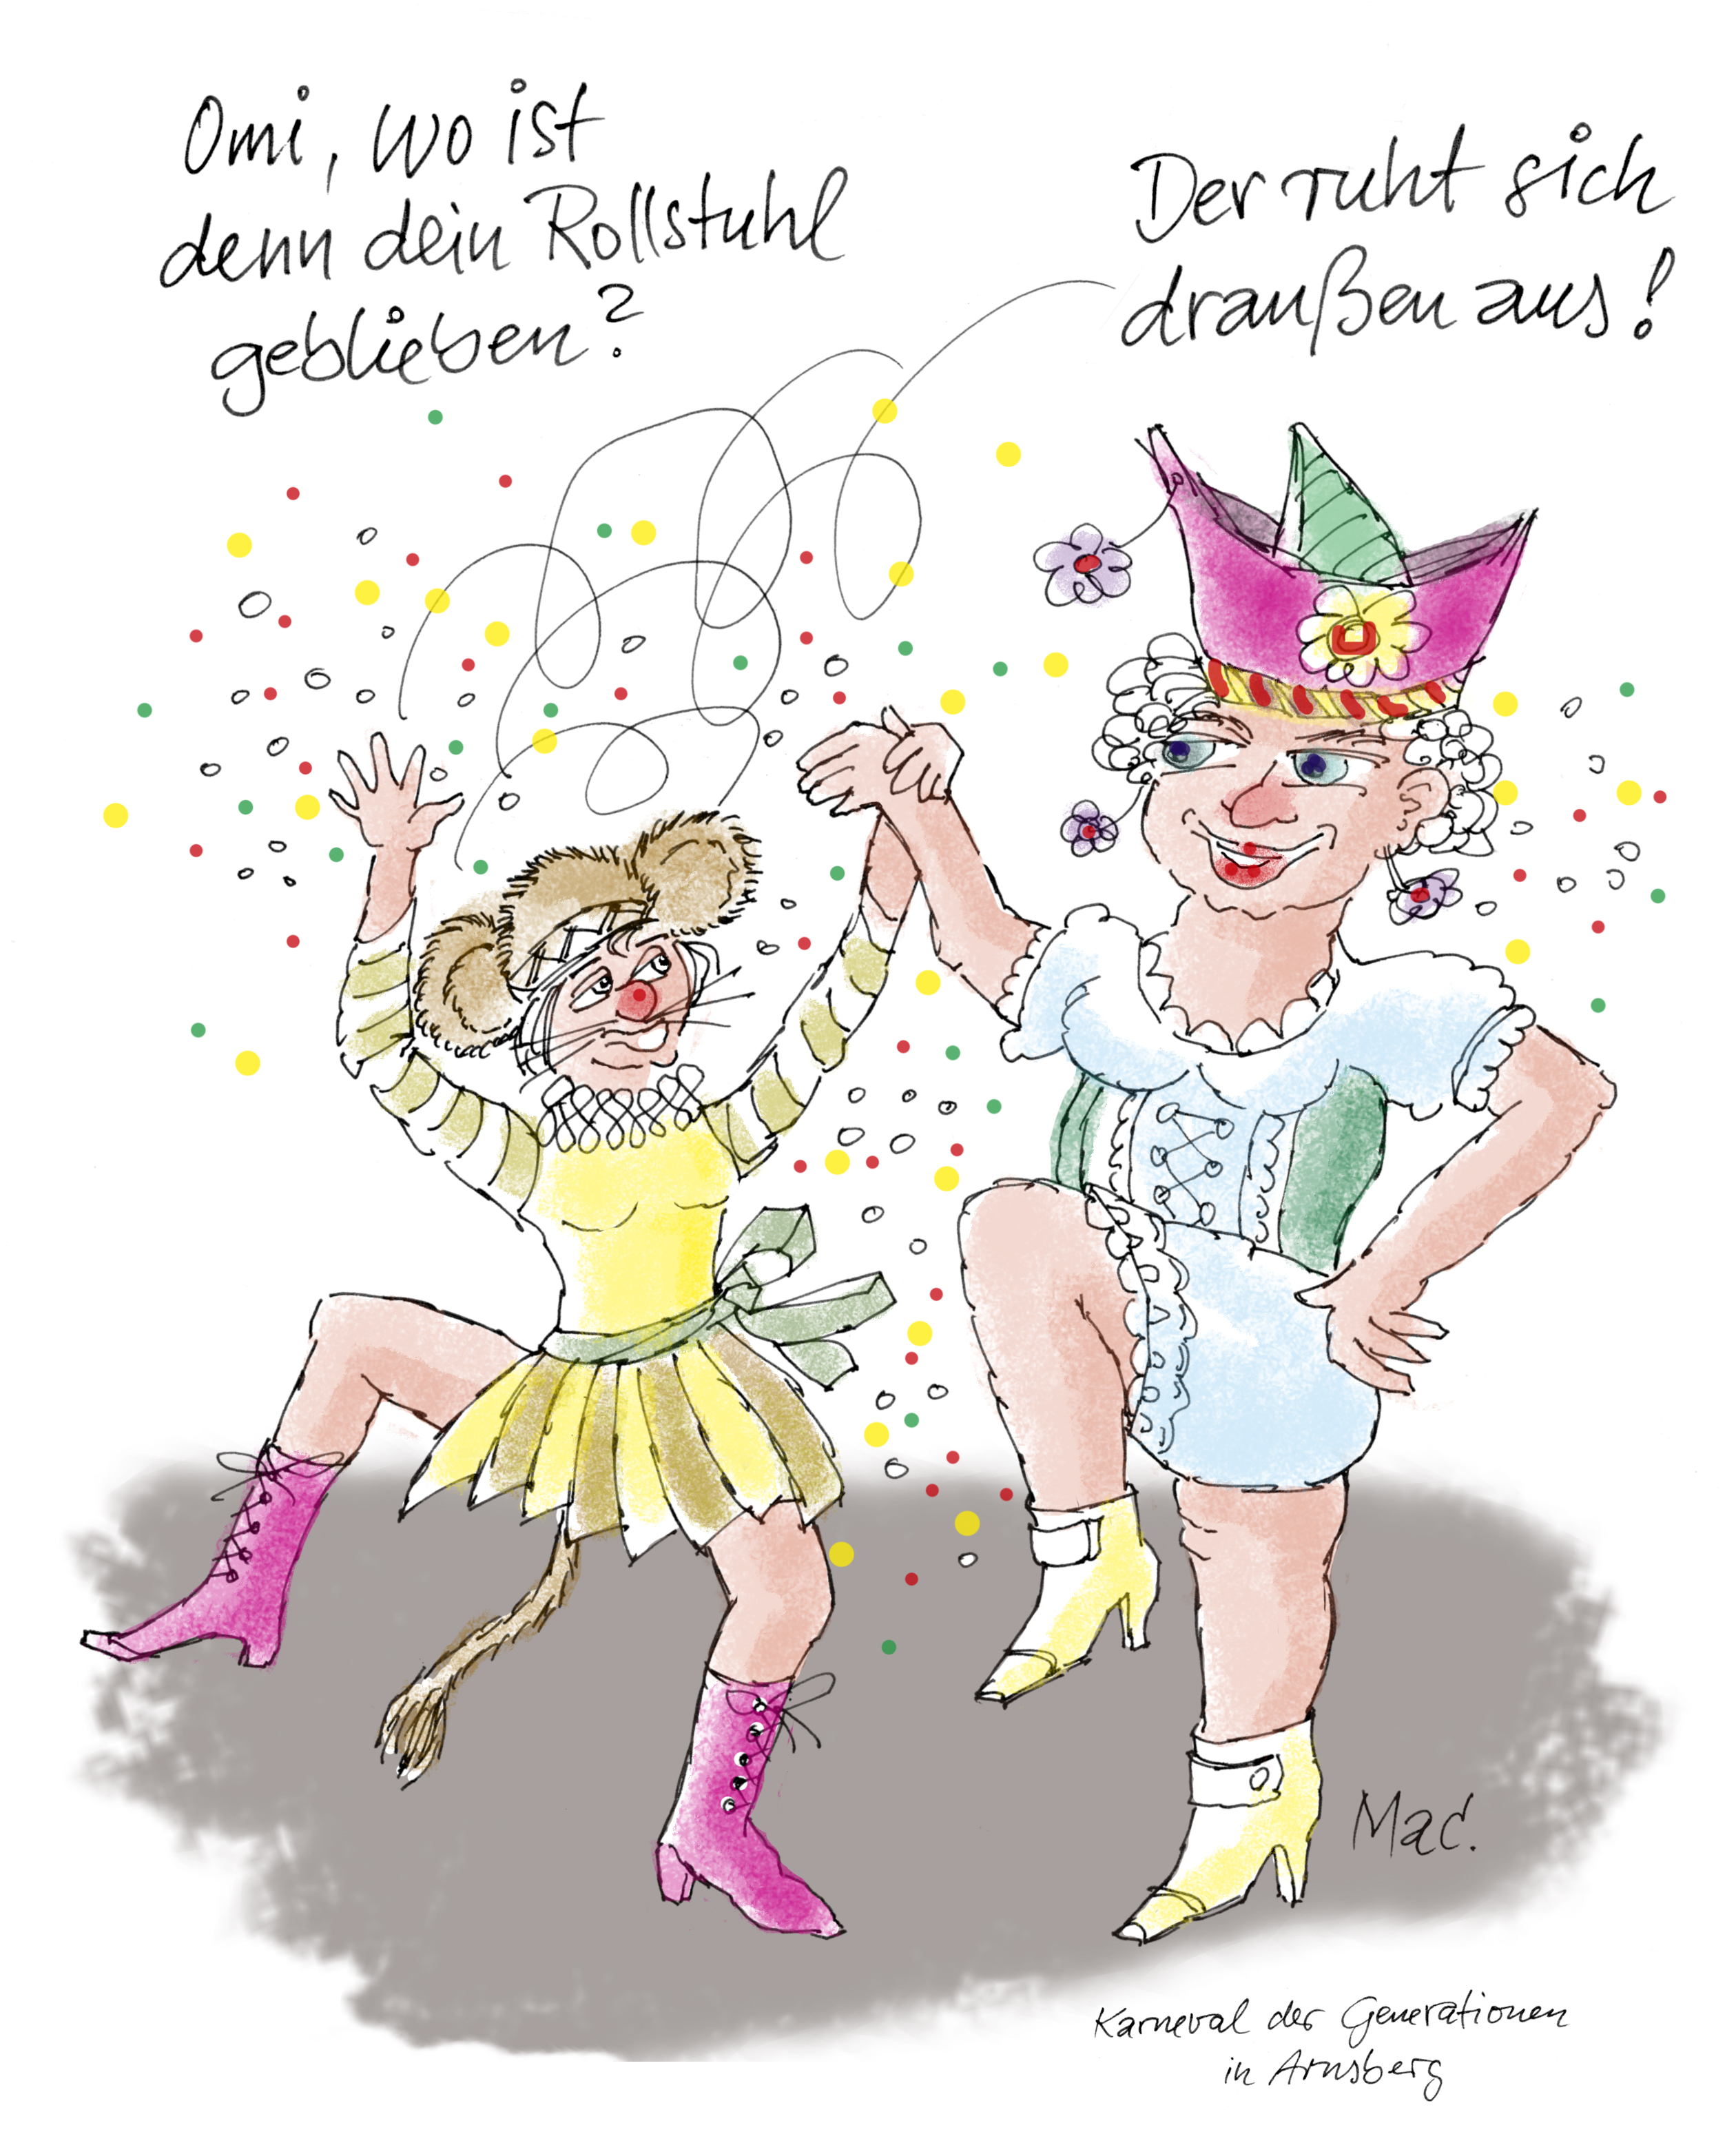 Cartoon von Gottfried Lambert für den Arnsberger Karneval der Generationen.